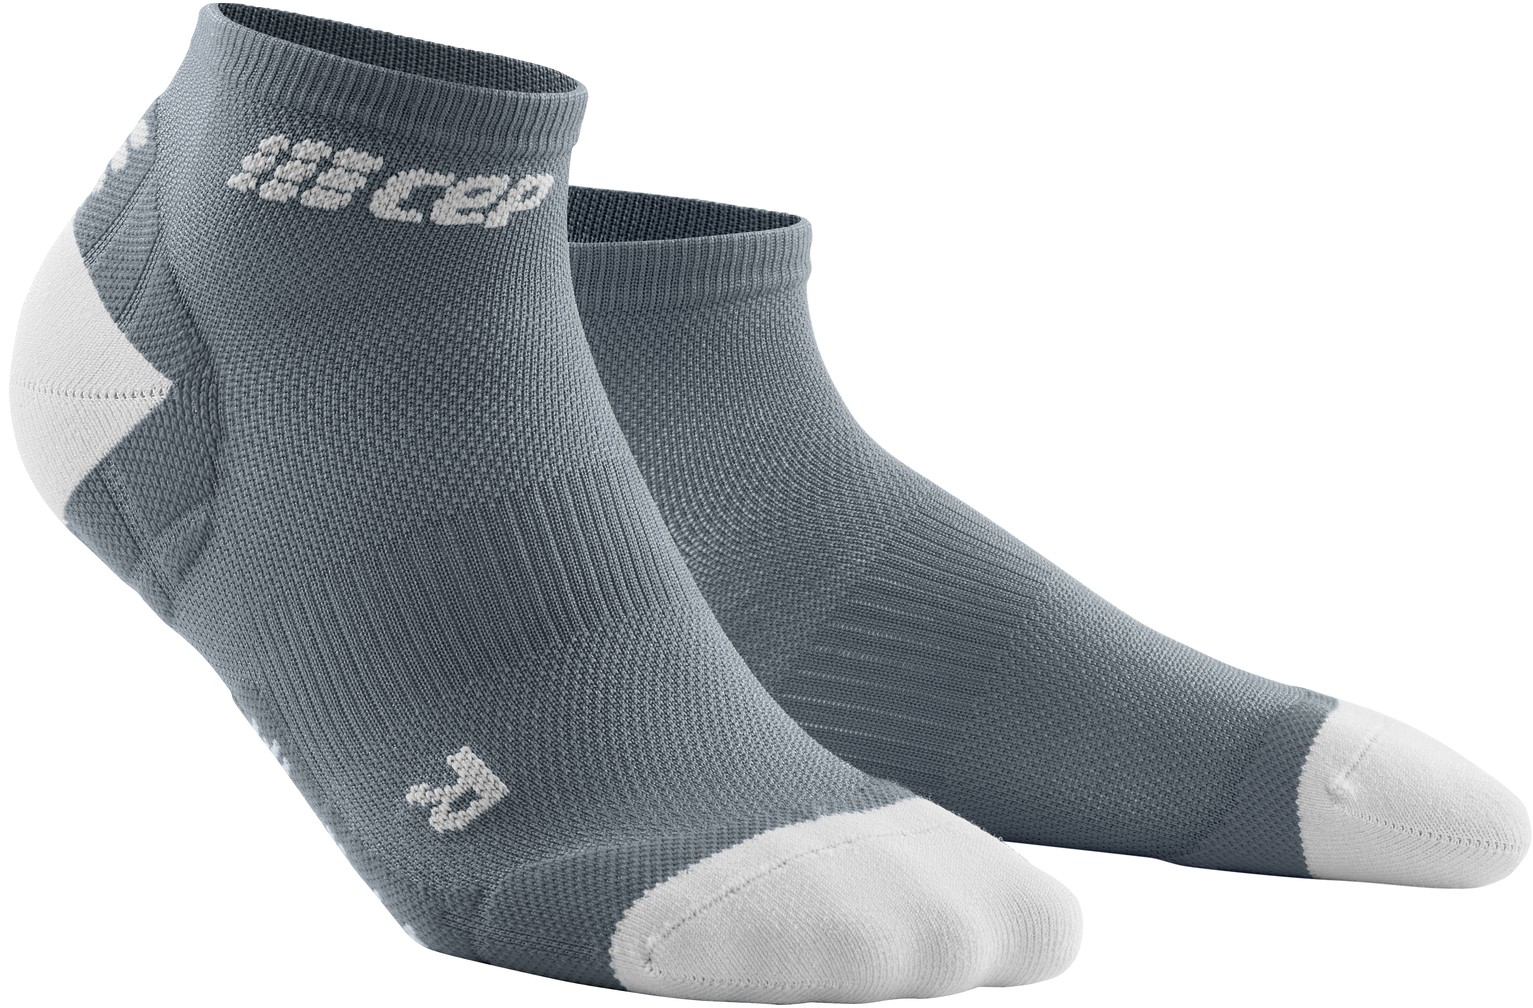 CEP dámské kotníkové běžecké kompresní ponožky ULTRALIGHT - grey / light grey IV (EUR 40-43)